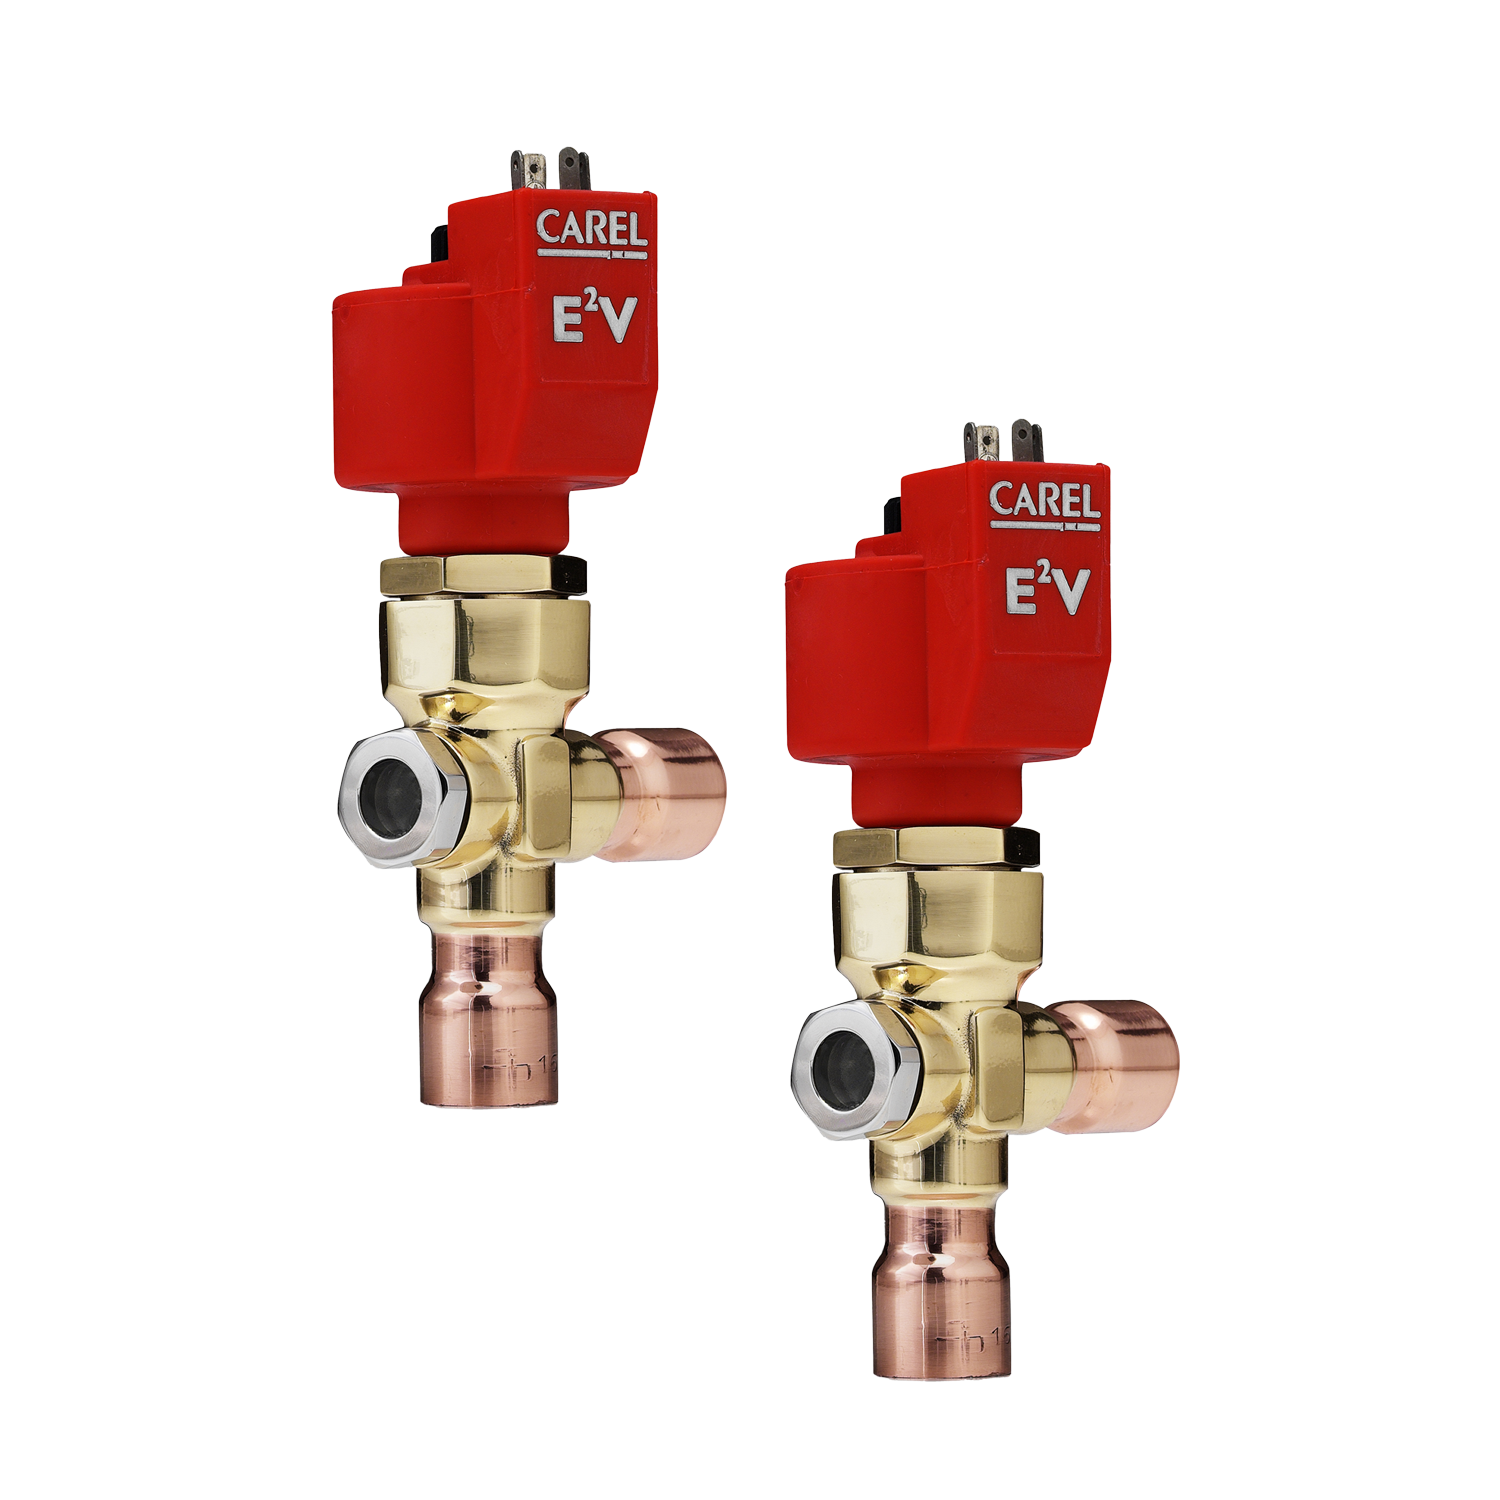 E2V-H für Heißgasbypass